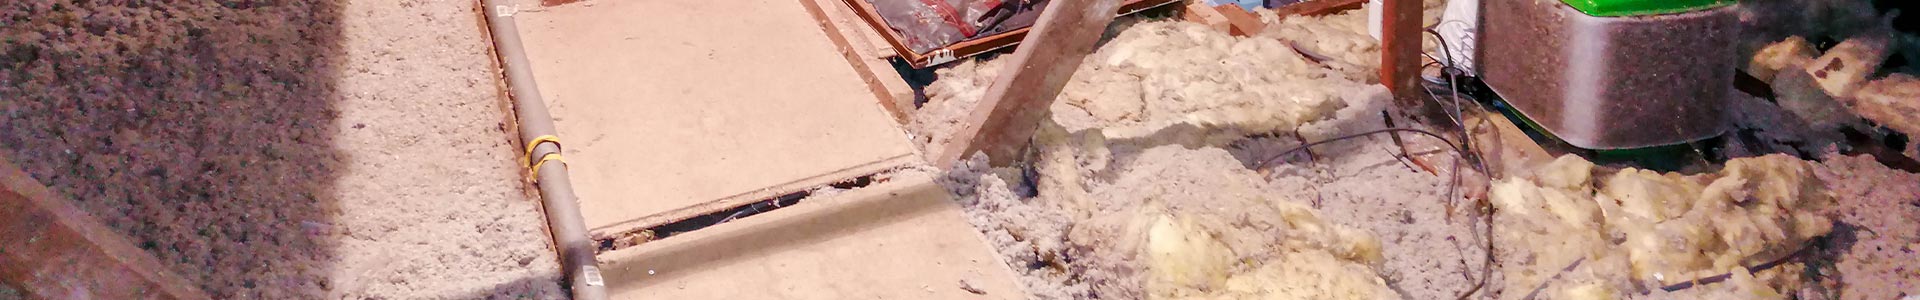 Asbestos Insulation Removal in Pueblo & Colorado Springs, CO